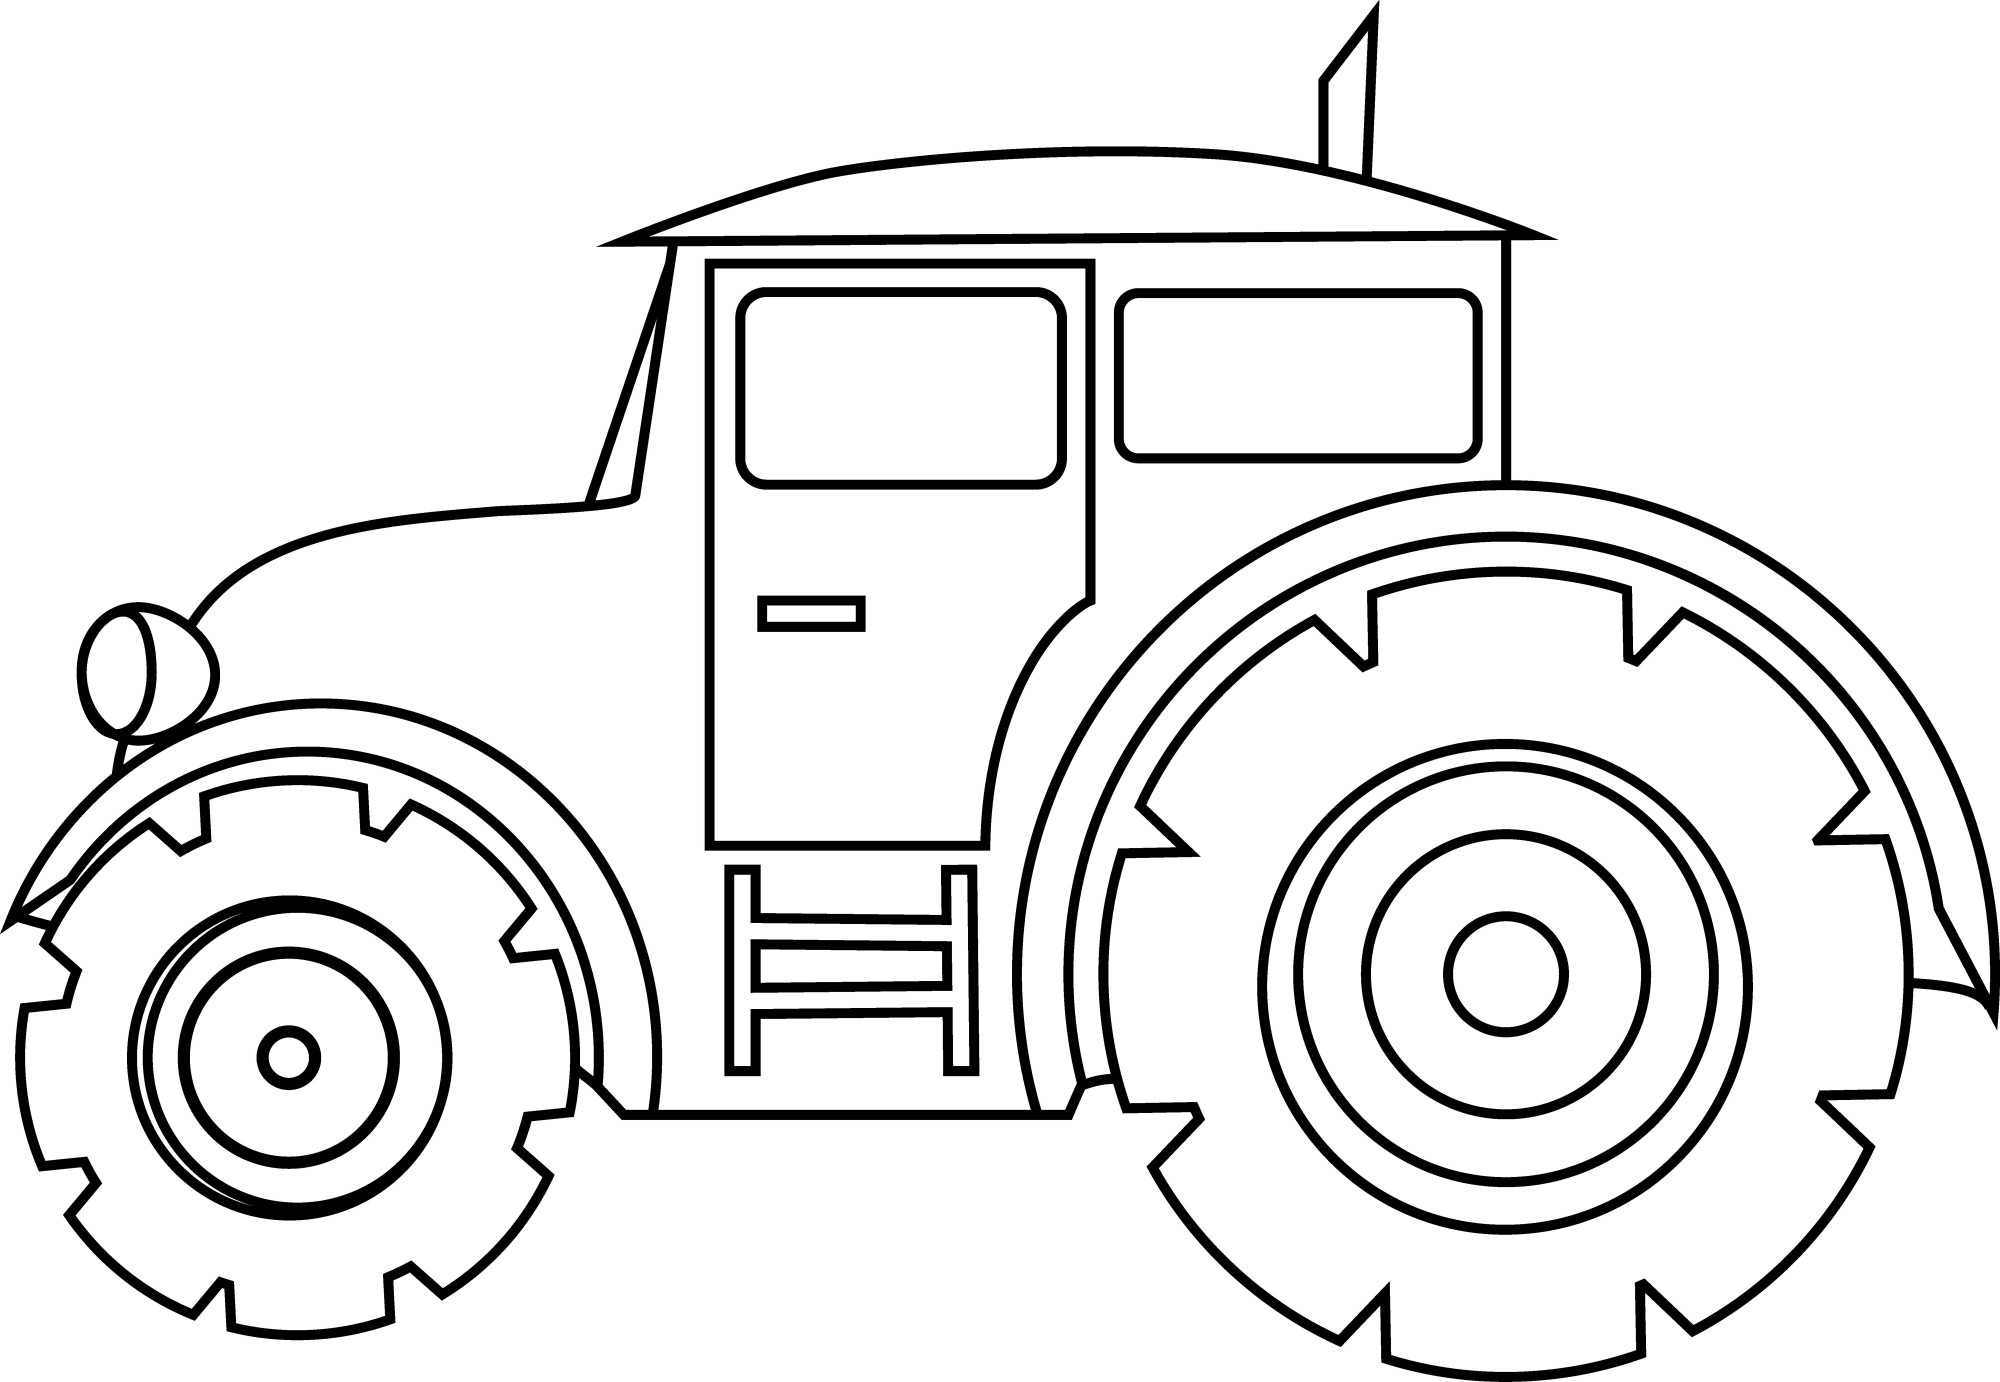 Раскраска для детей: большой трактор